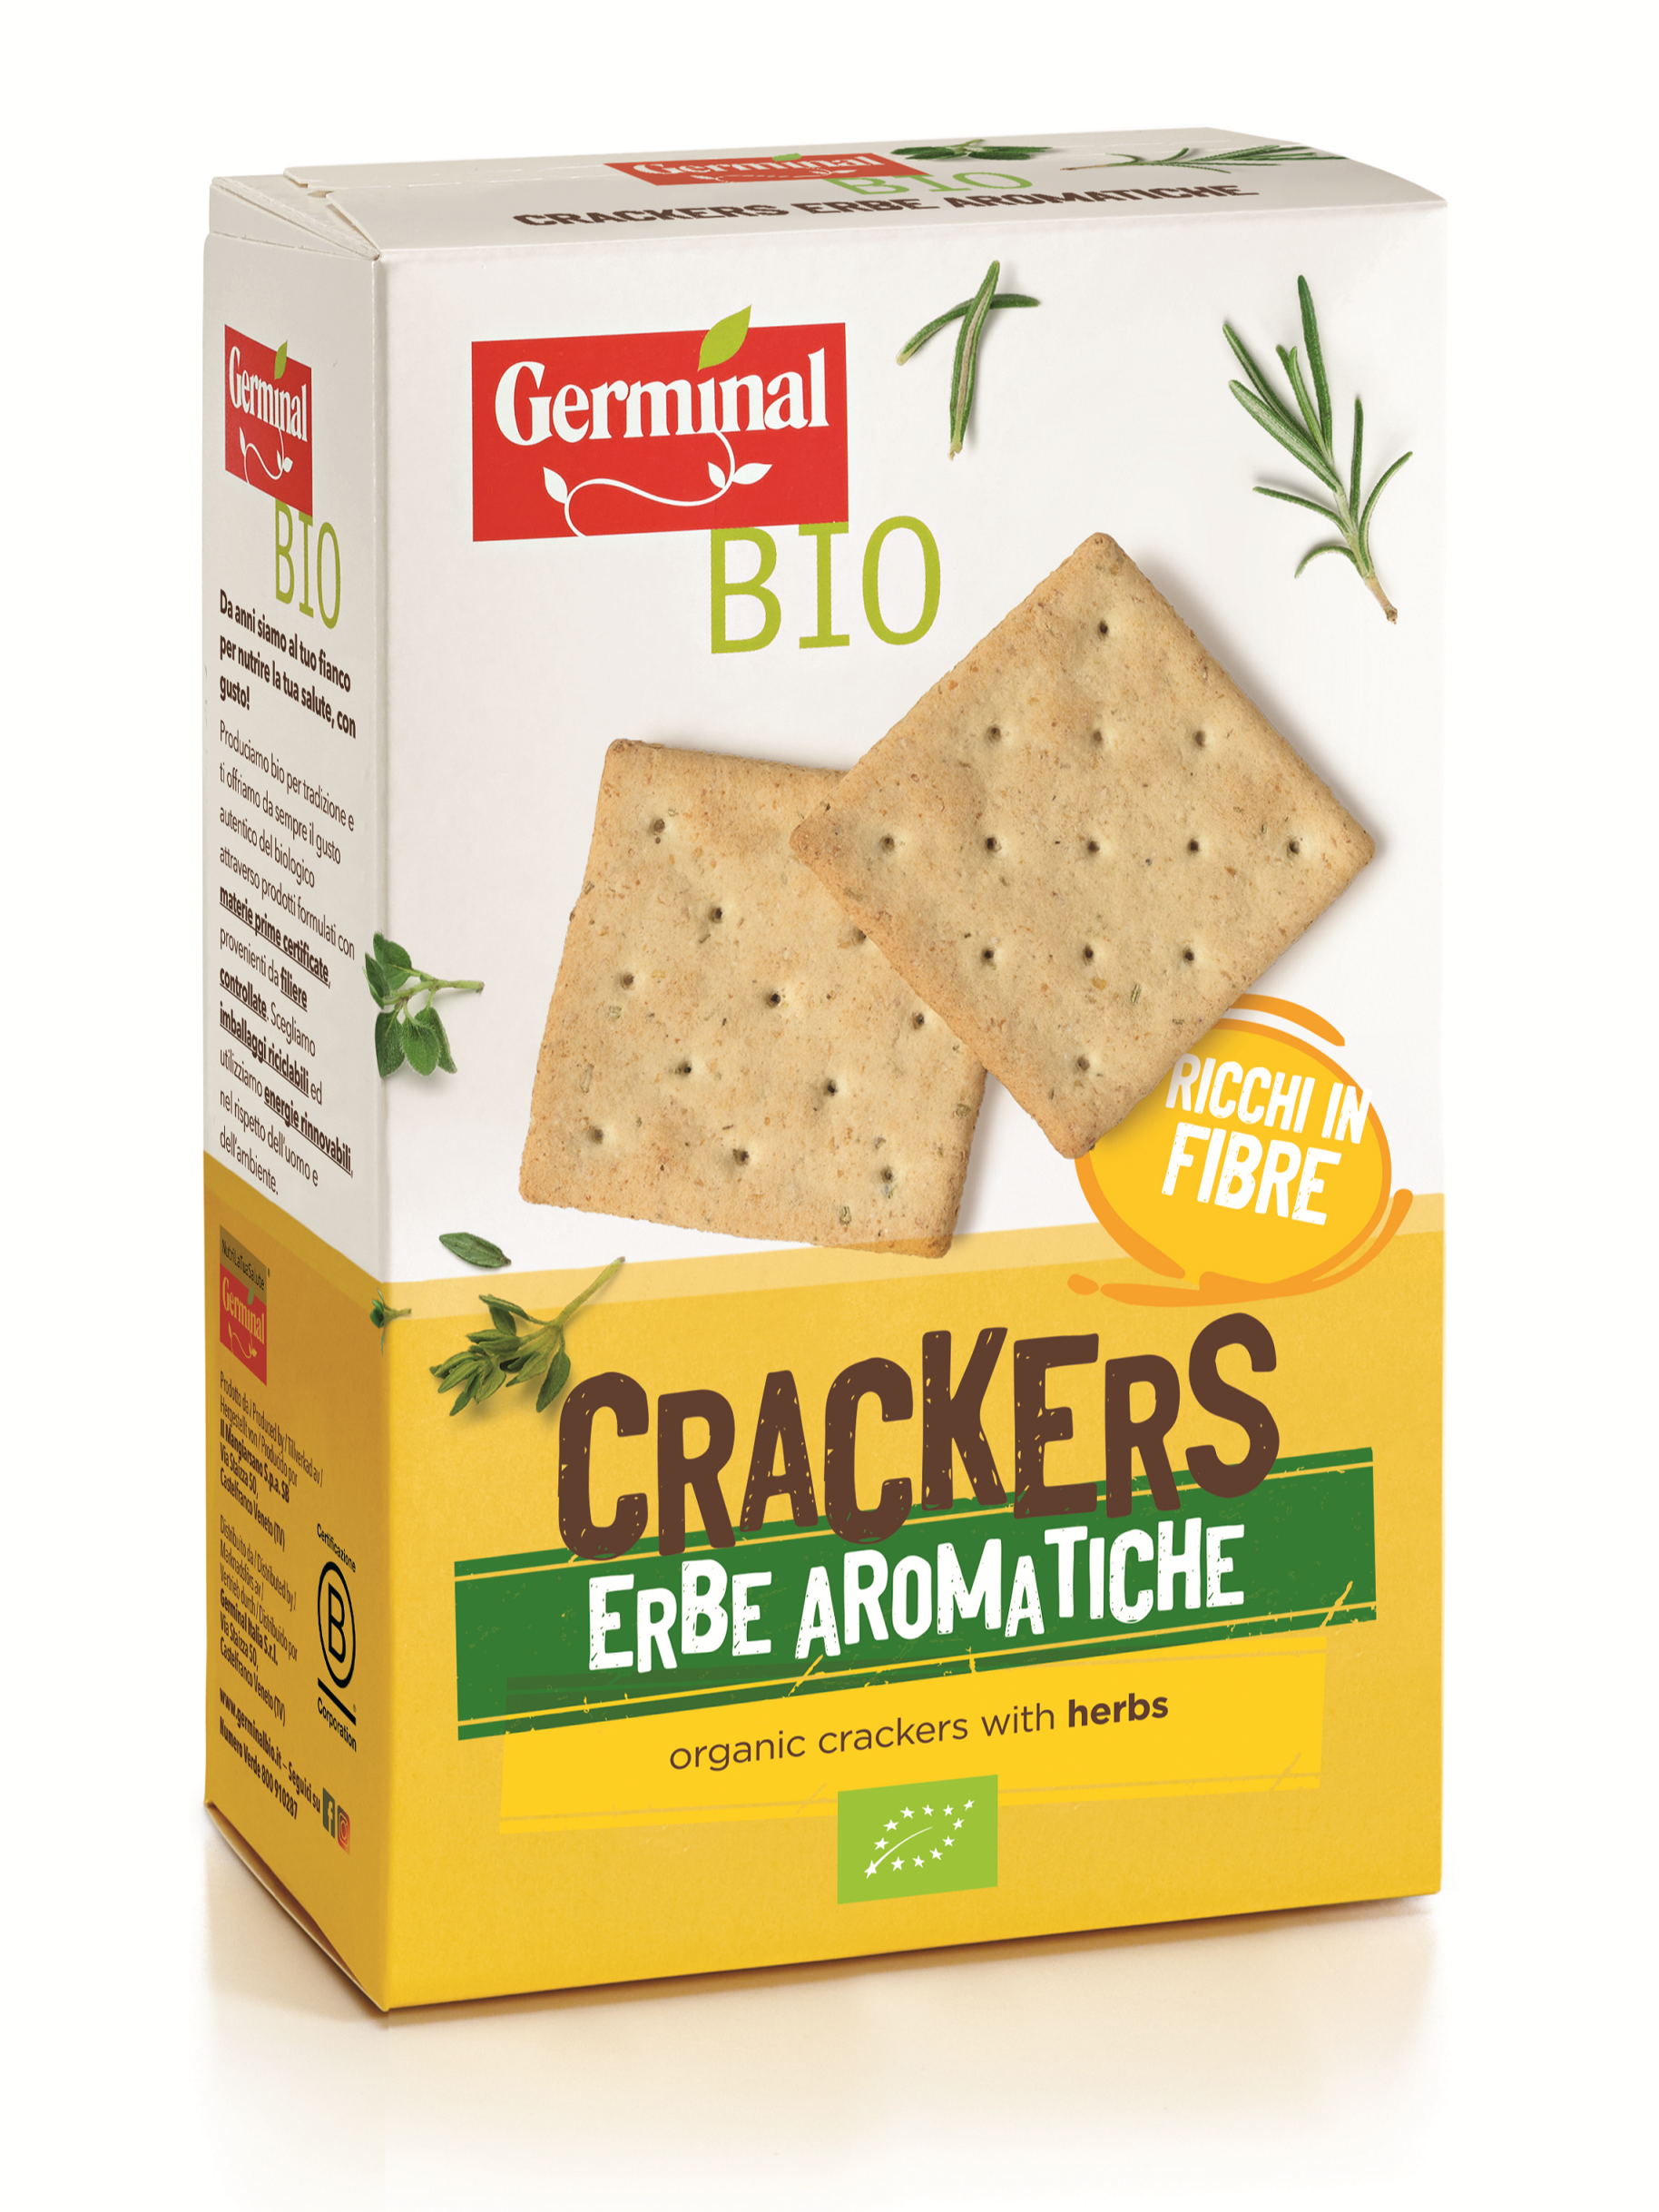 Immagine confezione Crackers Erbe Aromatiche Germinal Bio